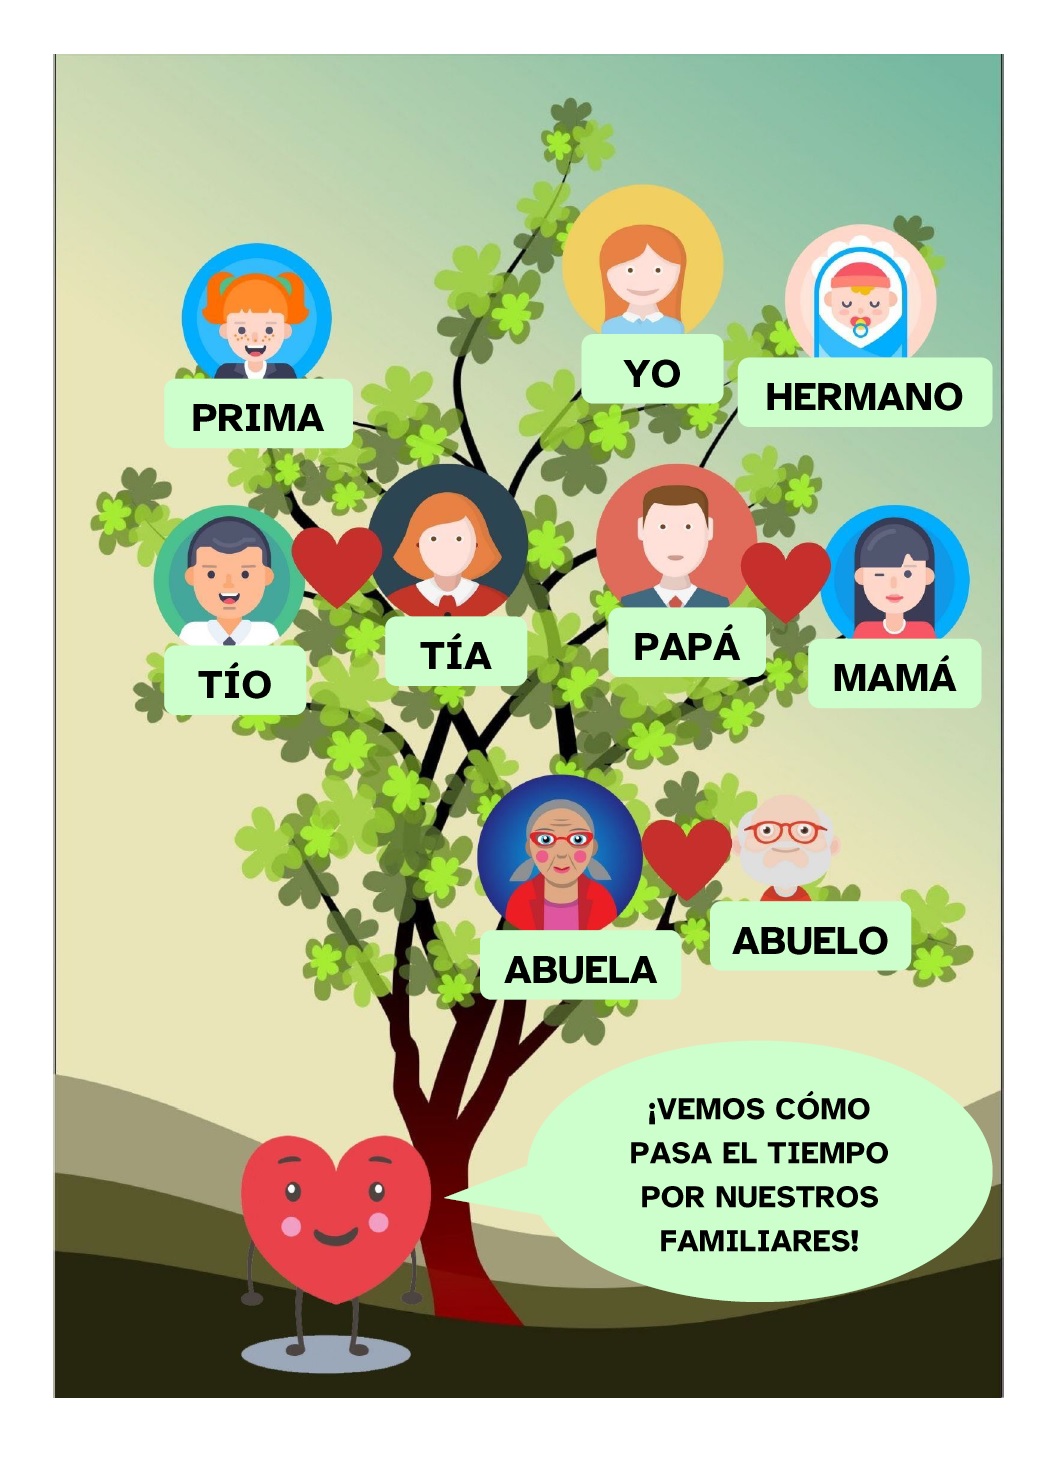 La imagen muestra el árbol genealógico de una niña, en el que aparecen sus padres, tíos y prima y abuelos. También aparece el personaje Kardia diciendo que podemos ver cómo pasa el tiempo por nuestros familiares